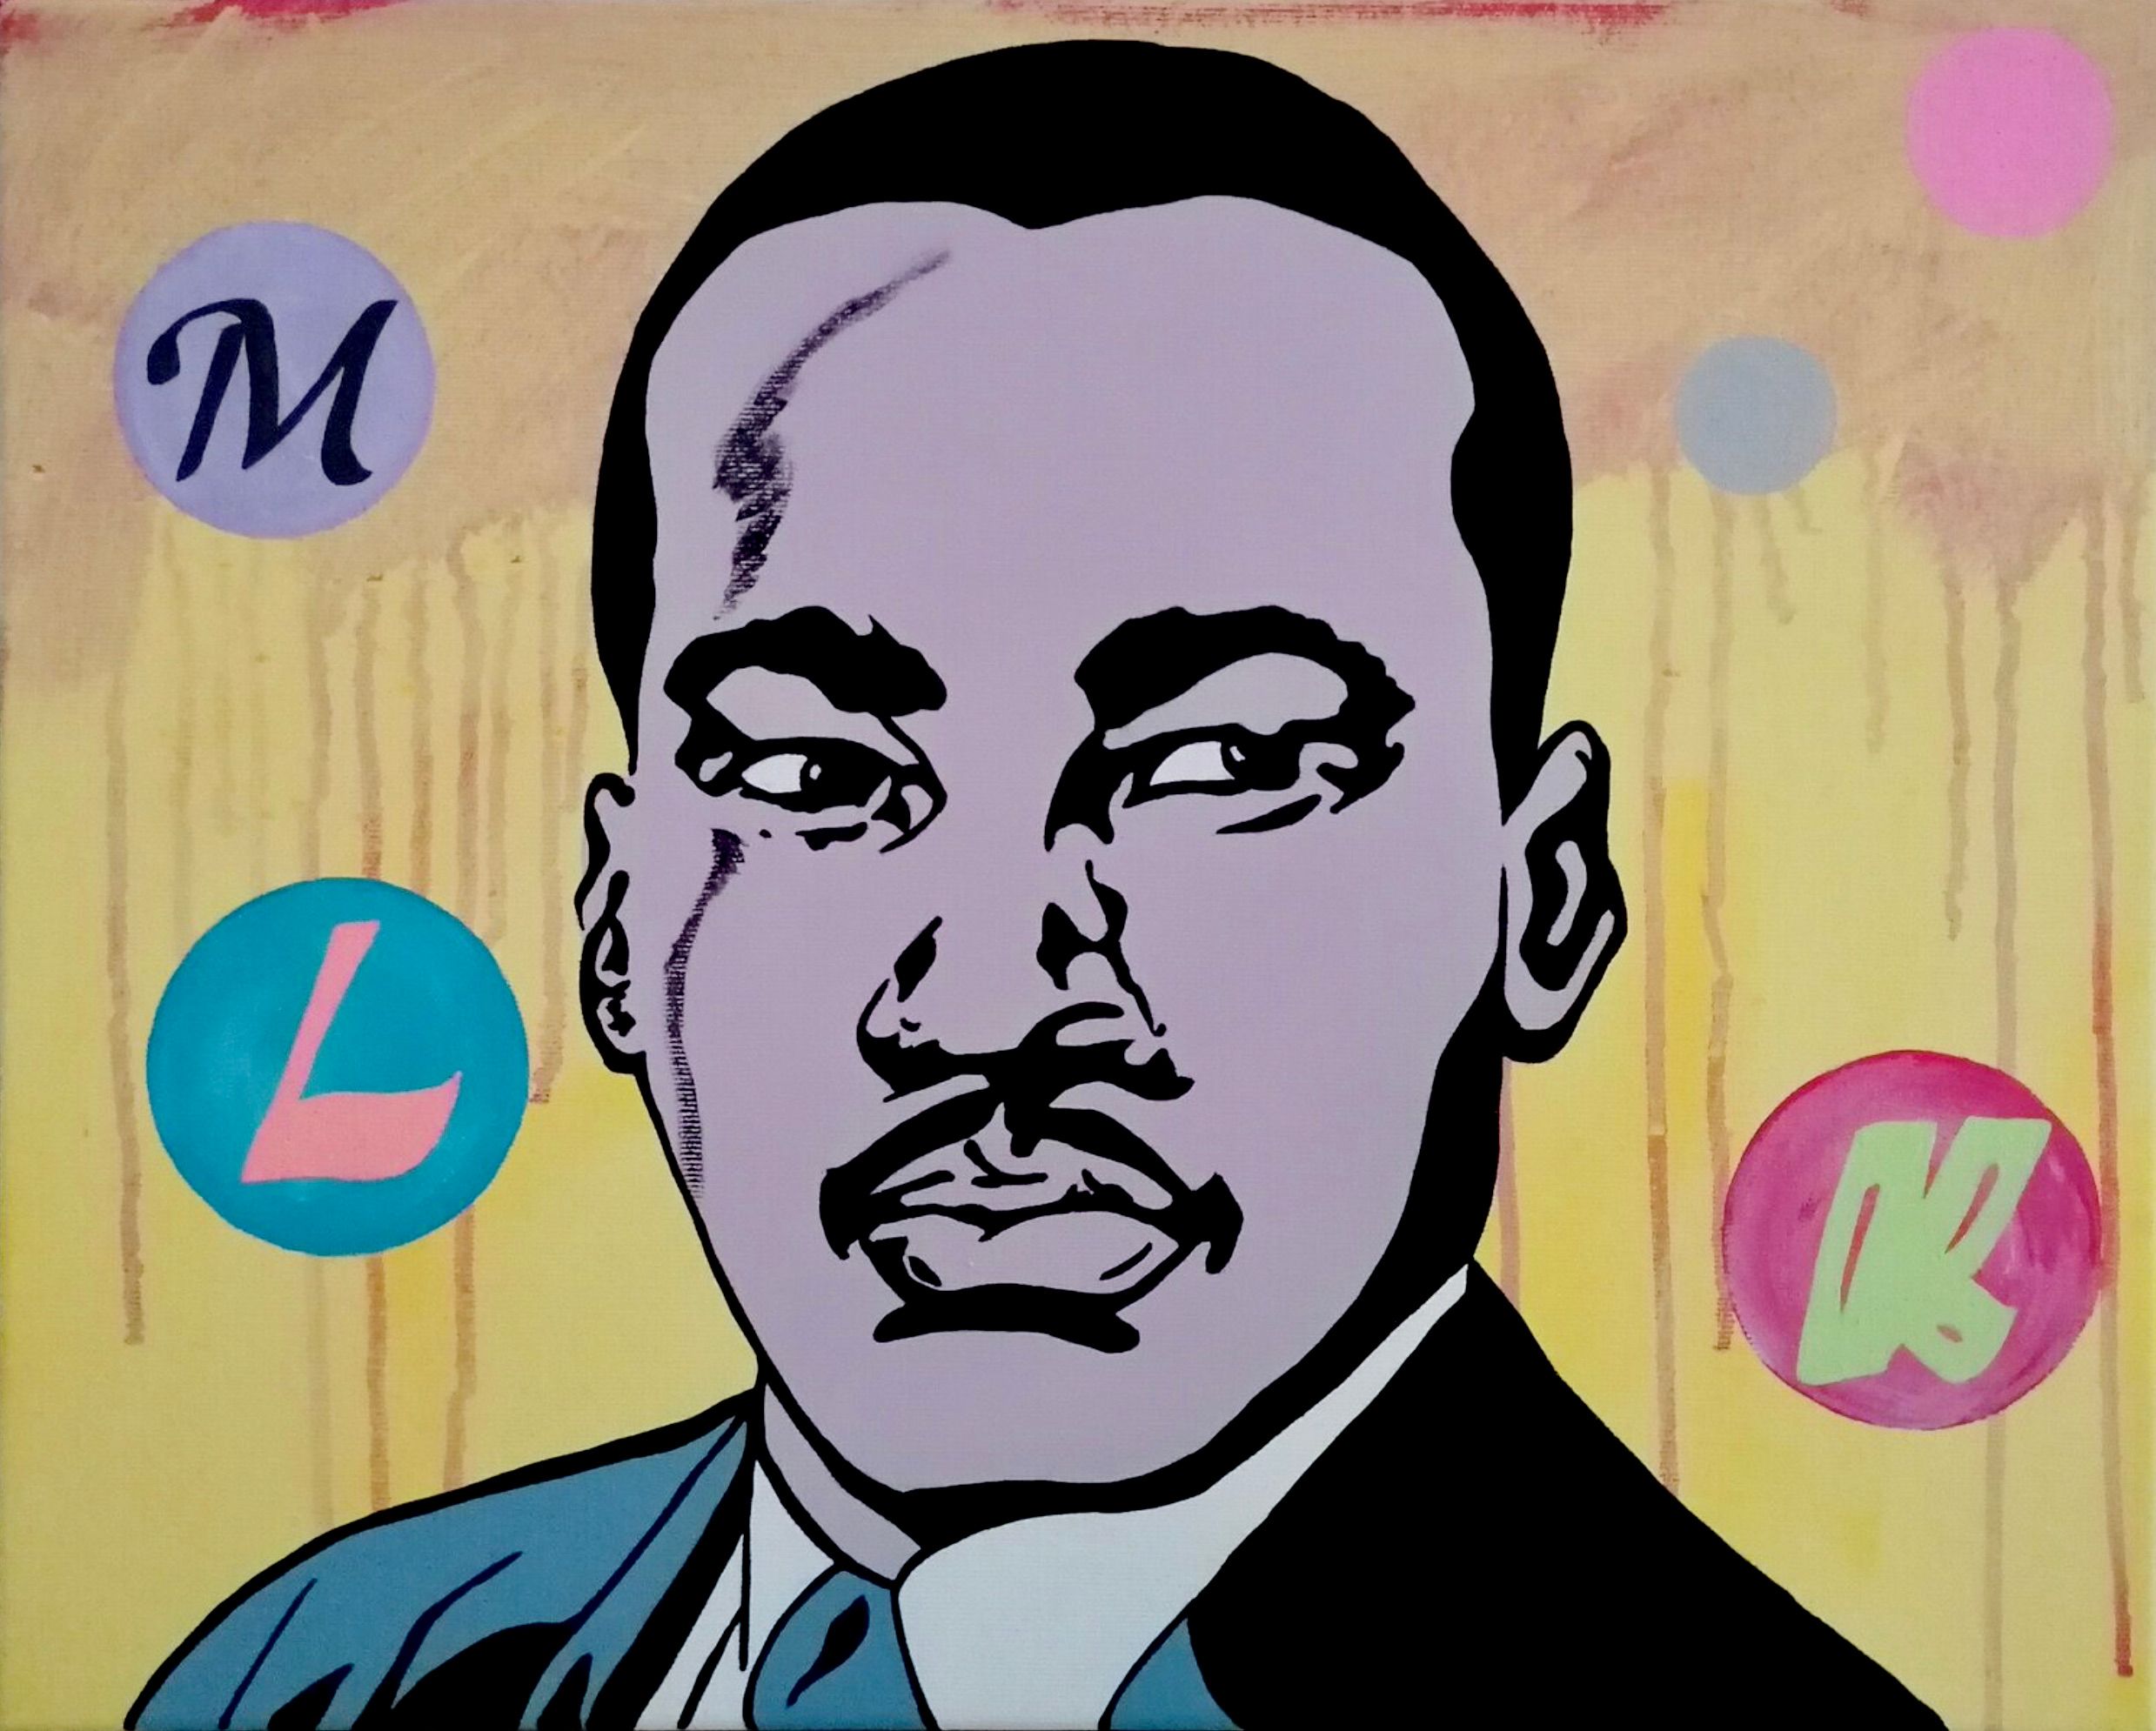 Holger Zimmermann's "MLK" farbenfrohe Pop-Art Fotocollage mit digitalen Überlagerungen.